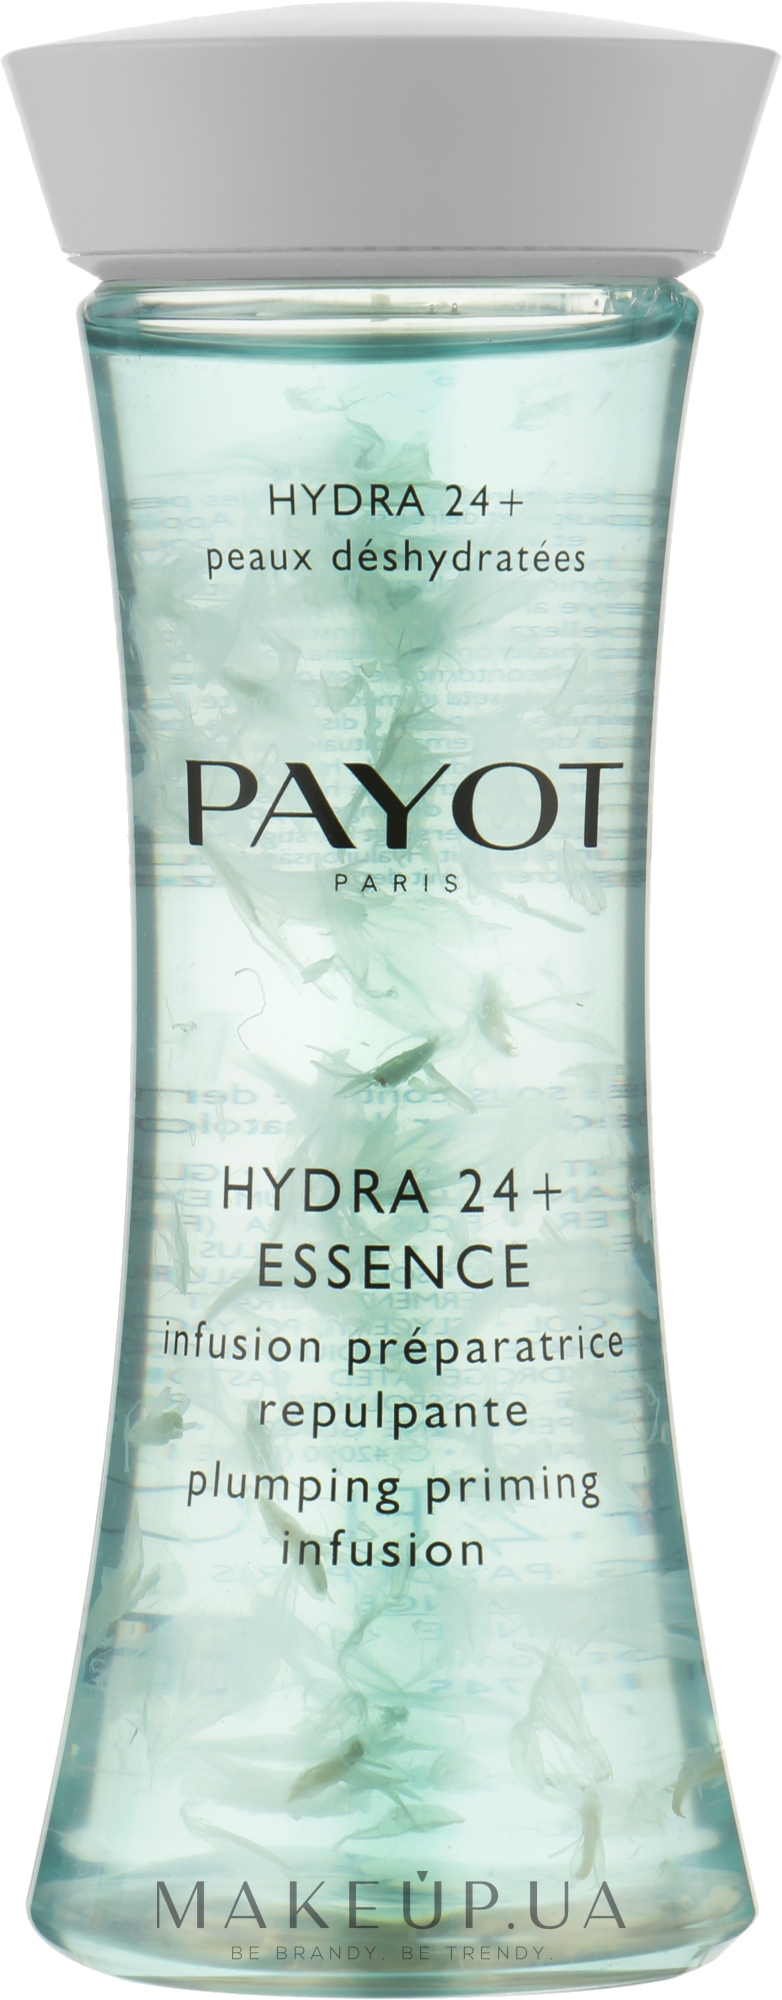 Payot essence hydra 24 отзывы илья черт наркотиков